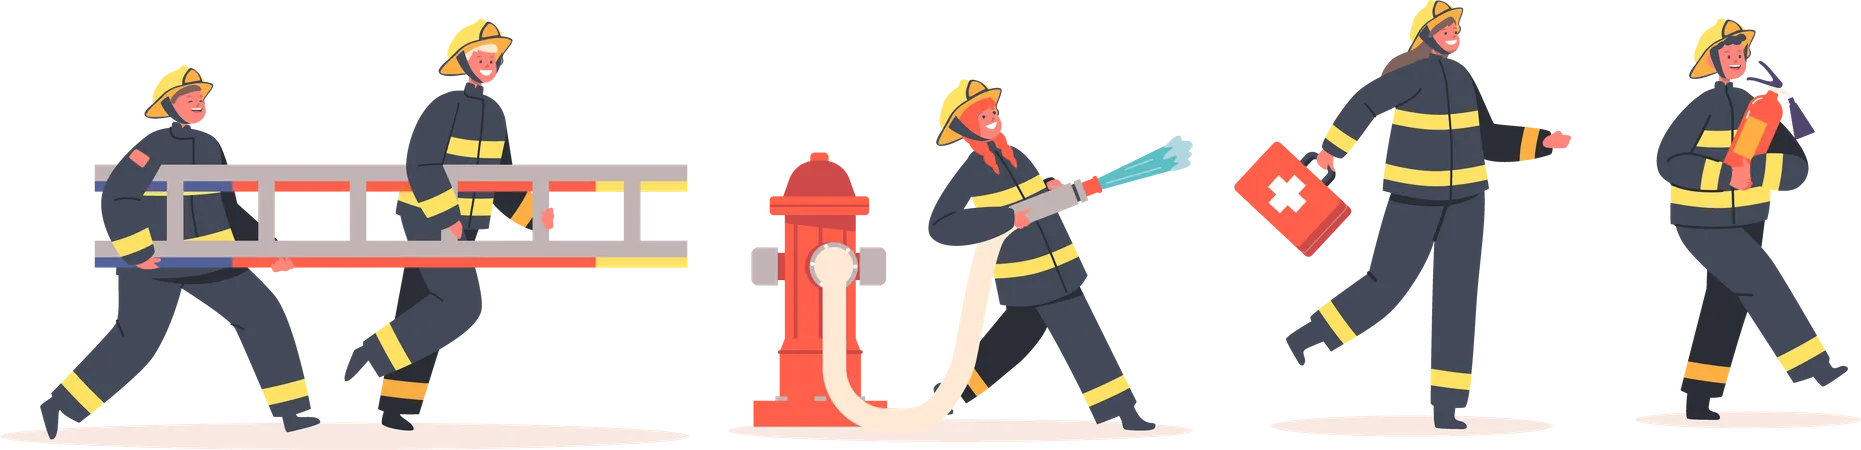 Feuerwehrleute  Illustration